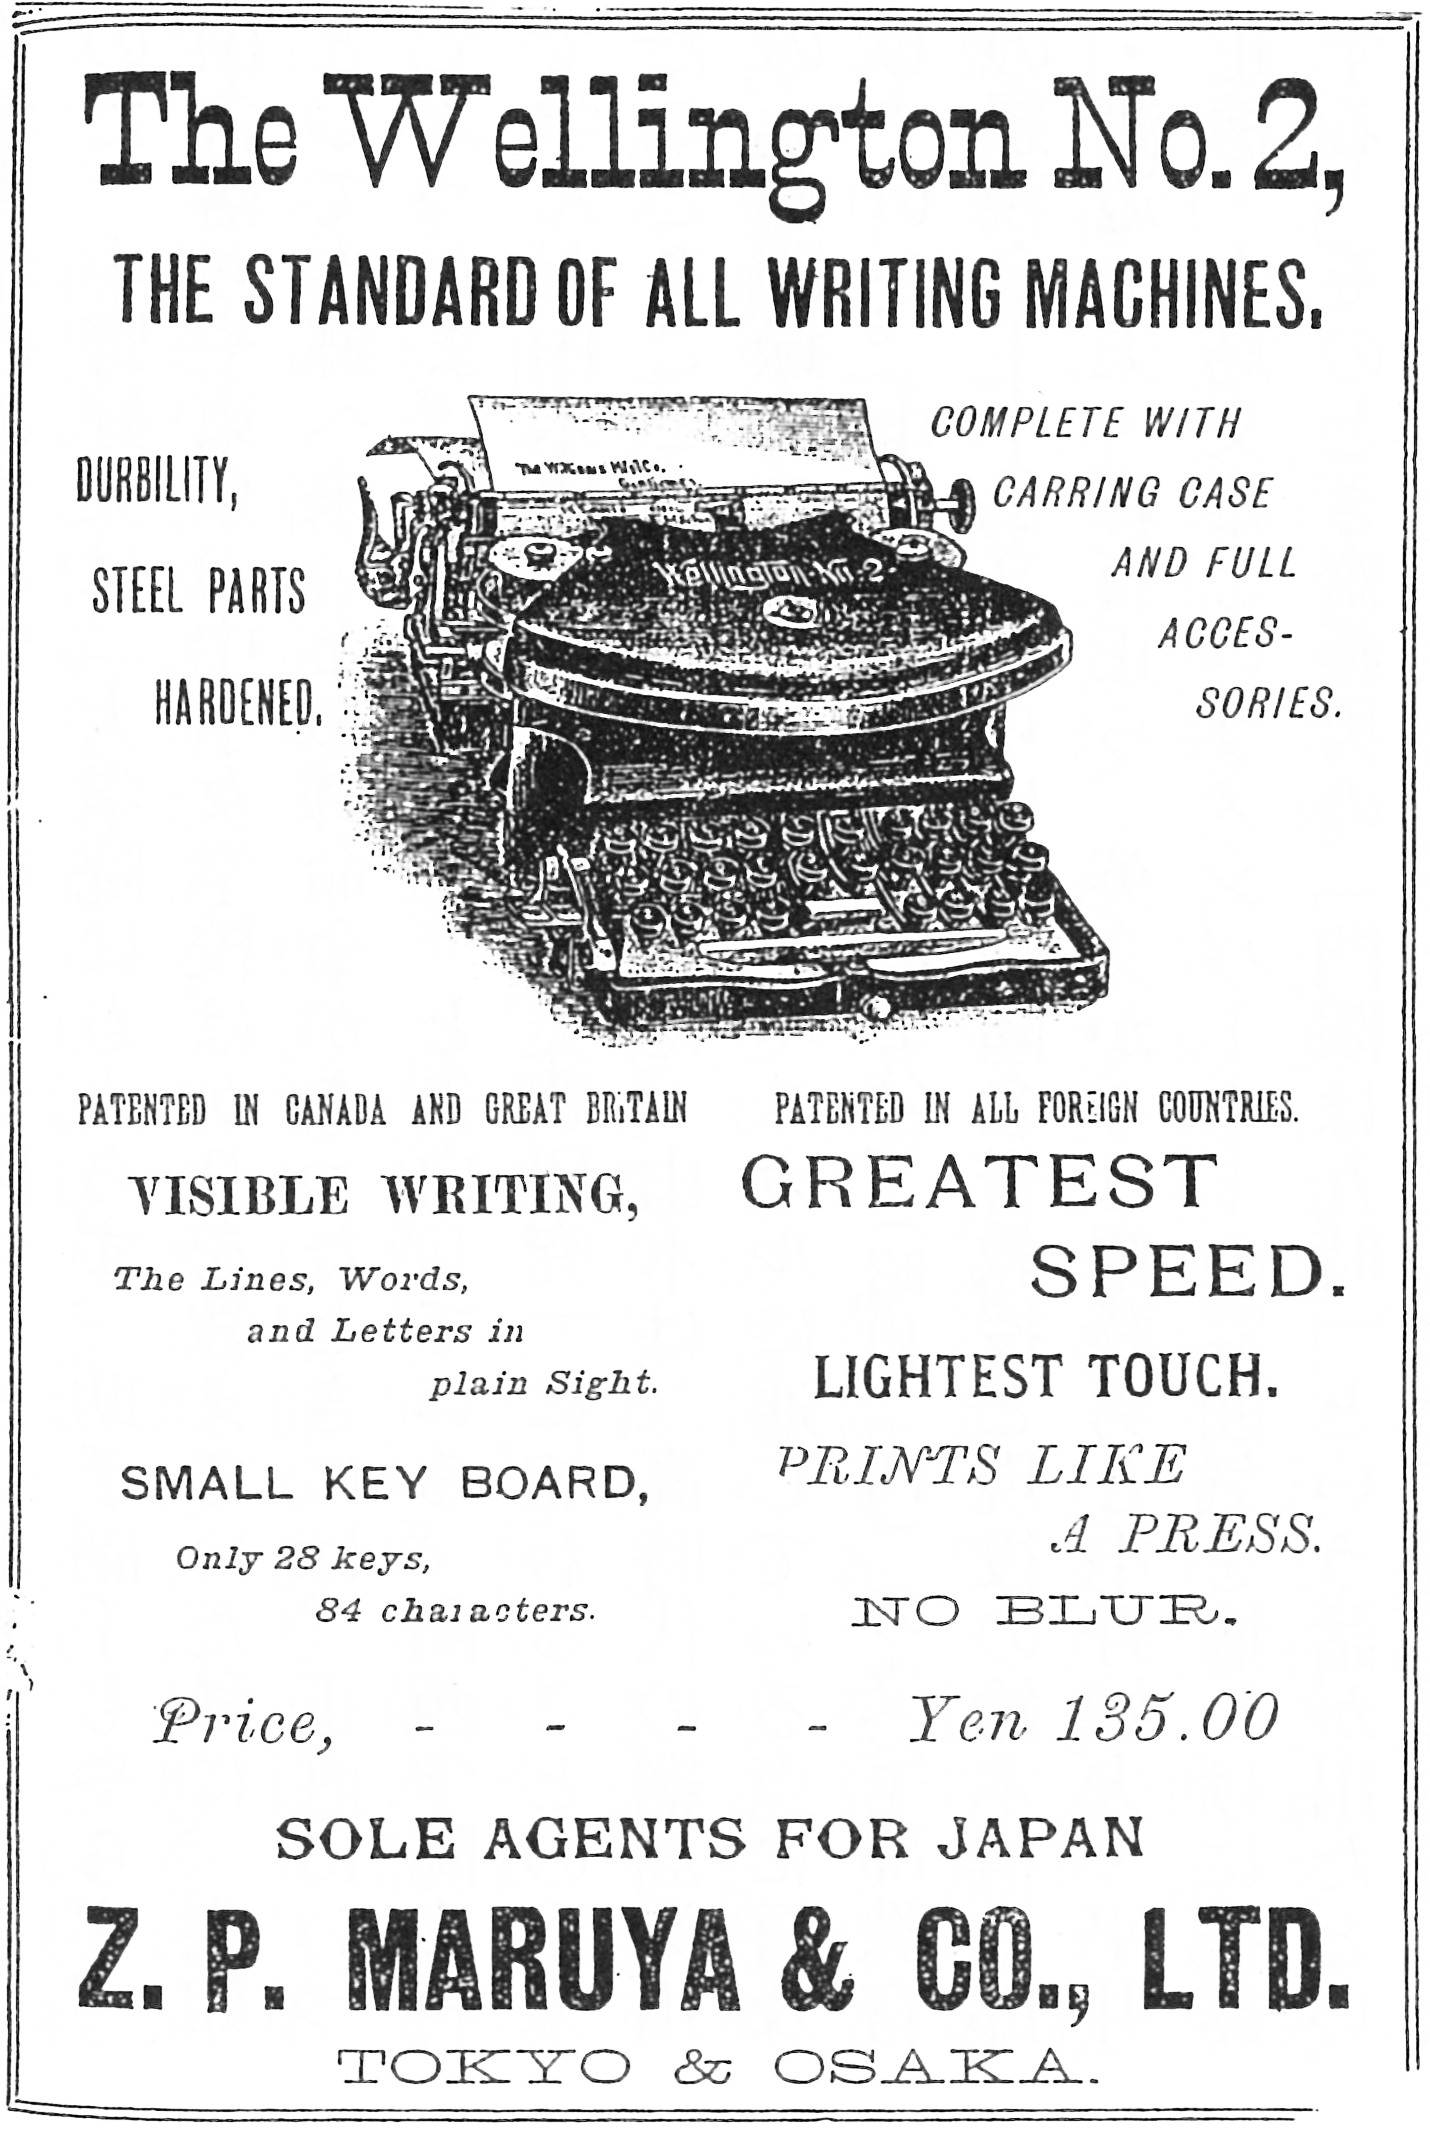 丸善のタイプライター広告（『學の燈』1900年10月号）